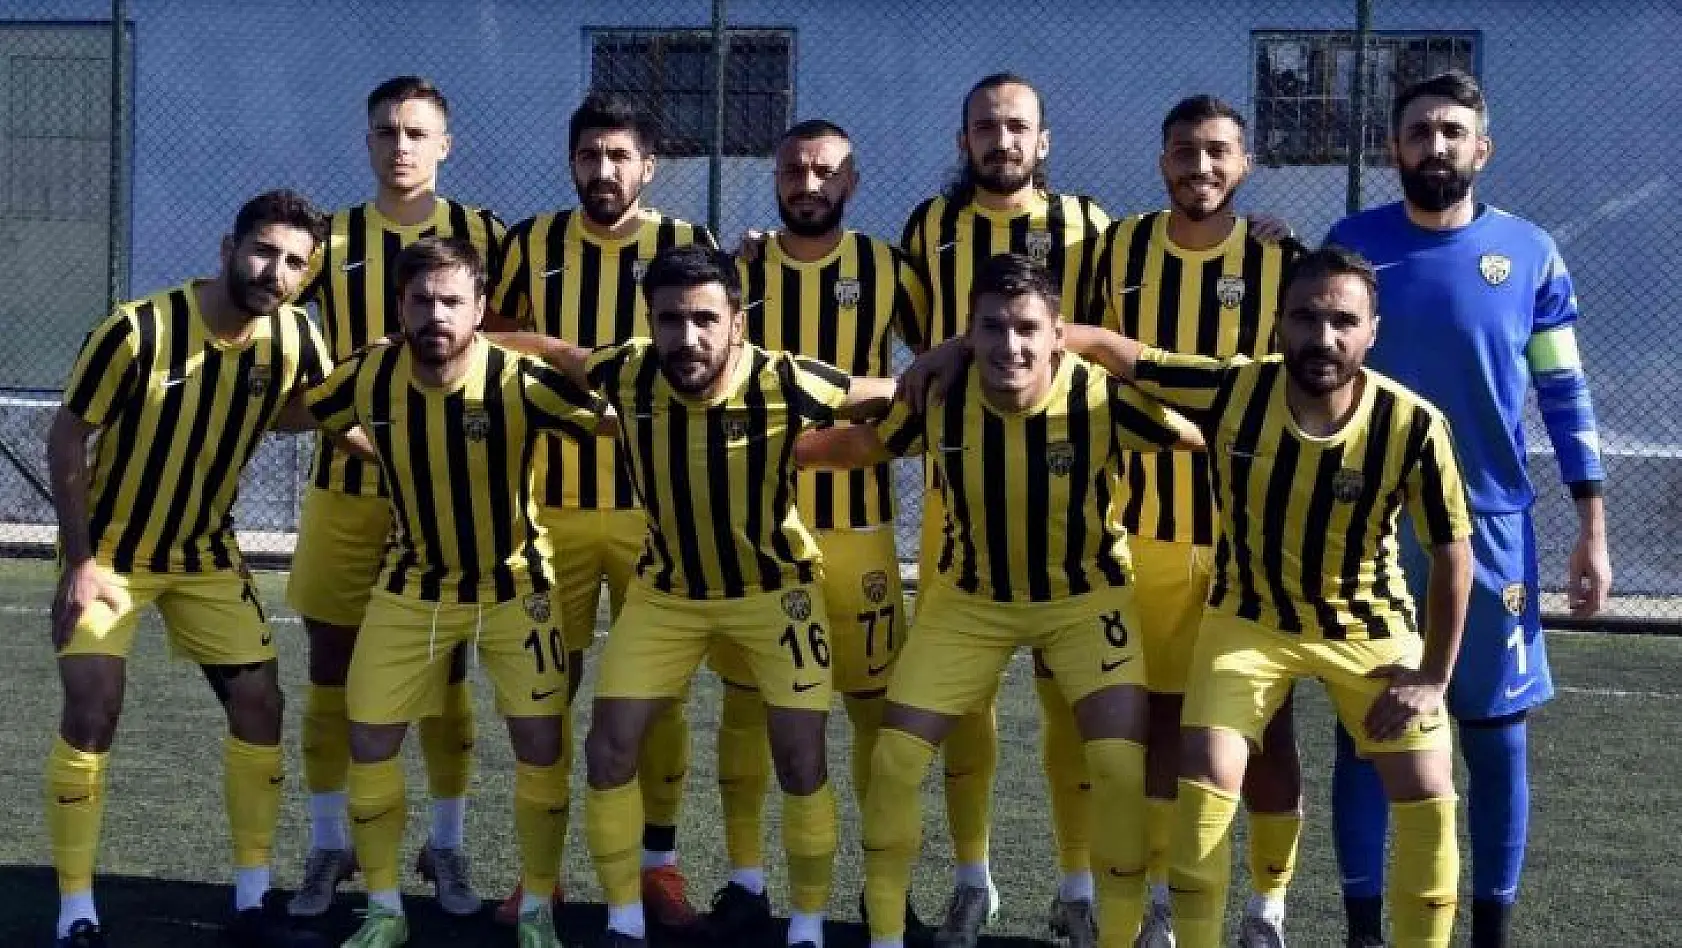 Aliağaspor FK, 3 puanı 5 golle aldı